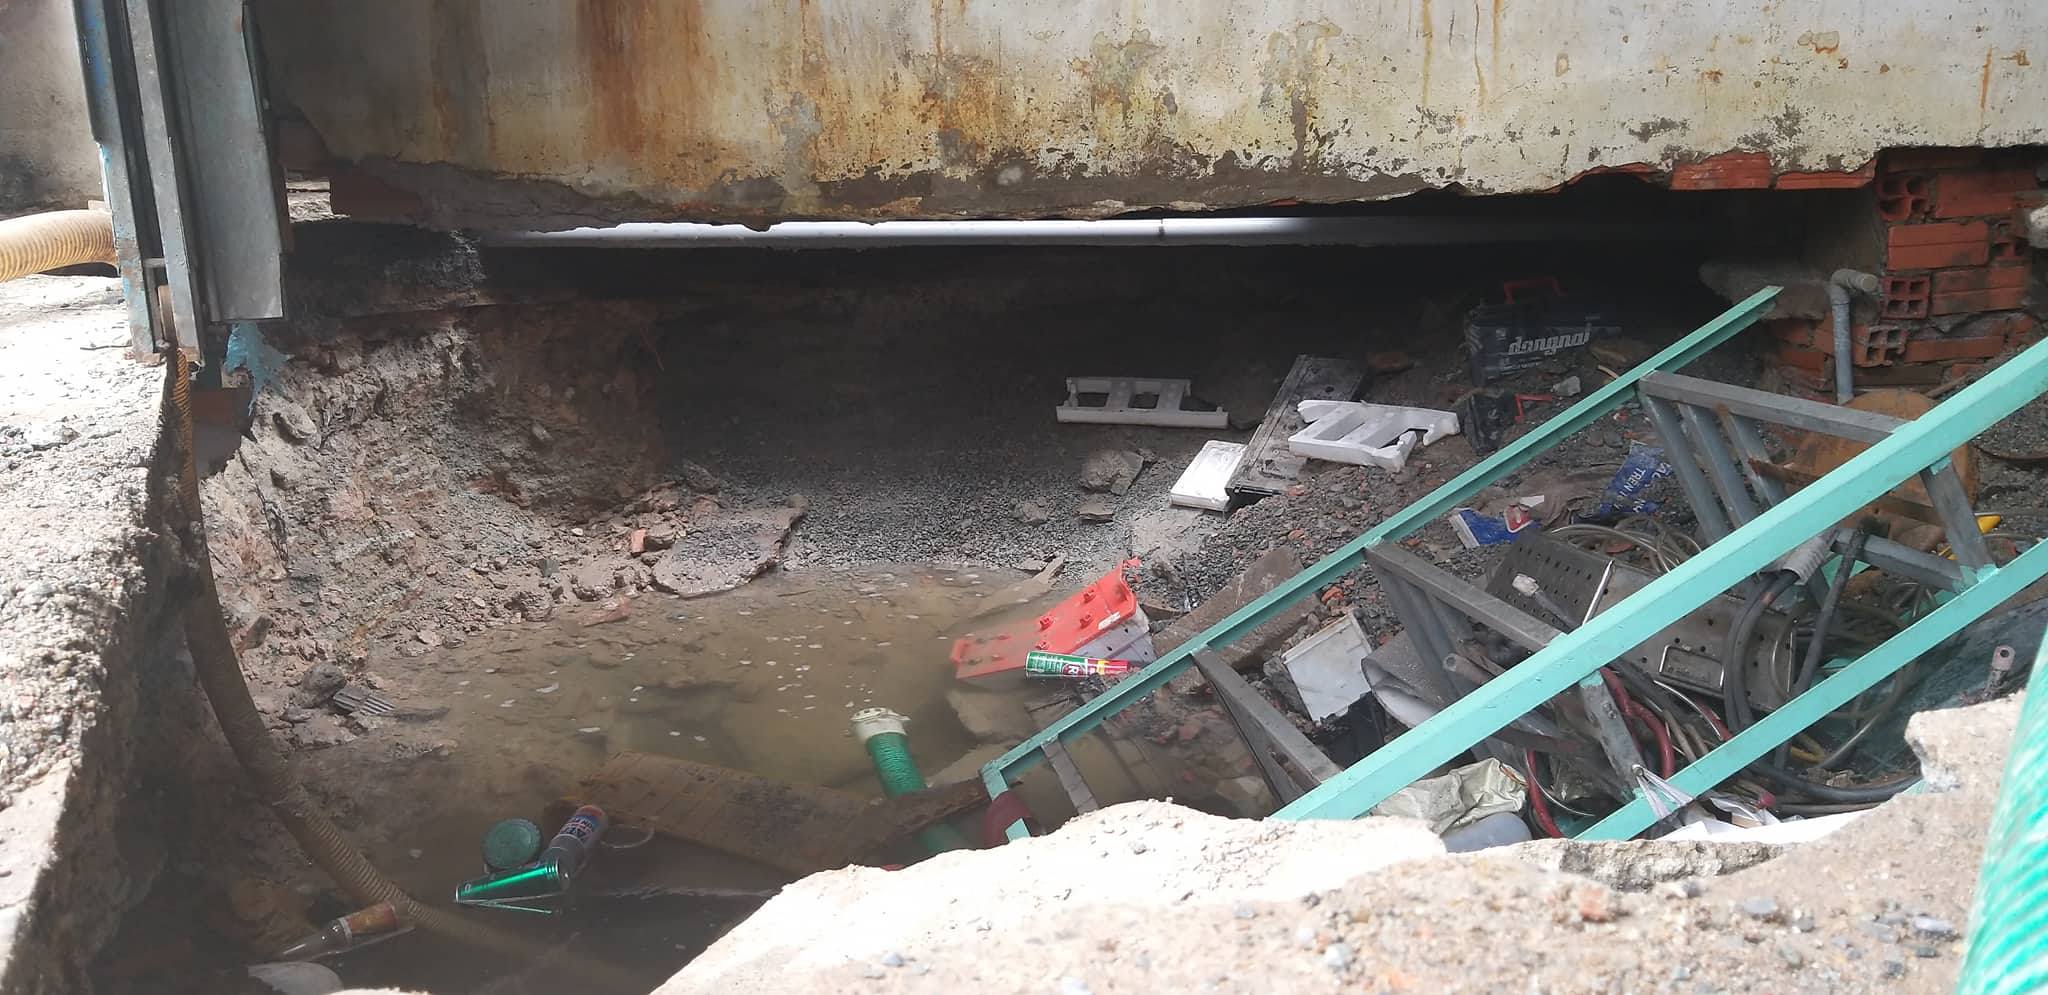 Đường ống nước sạch bị vỡ tạo “hố tử thần” ở Sài Gòn - 1